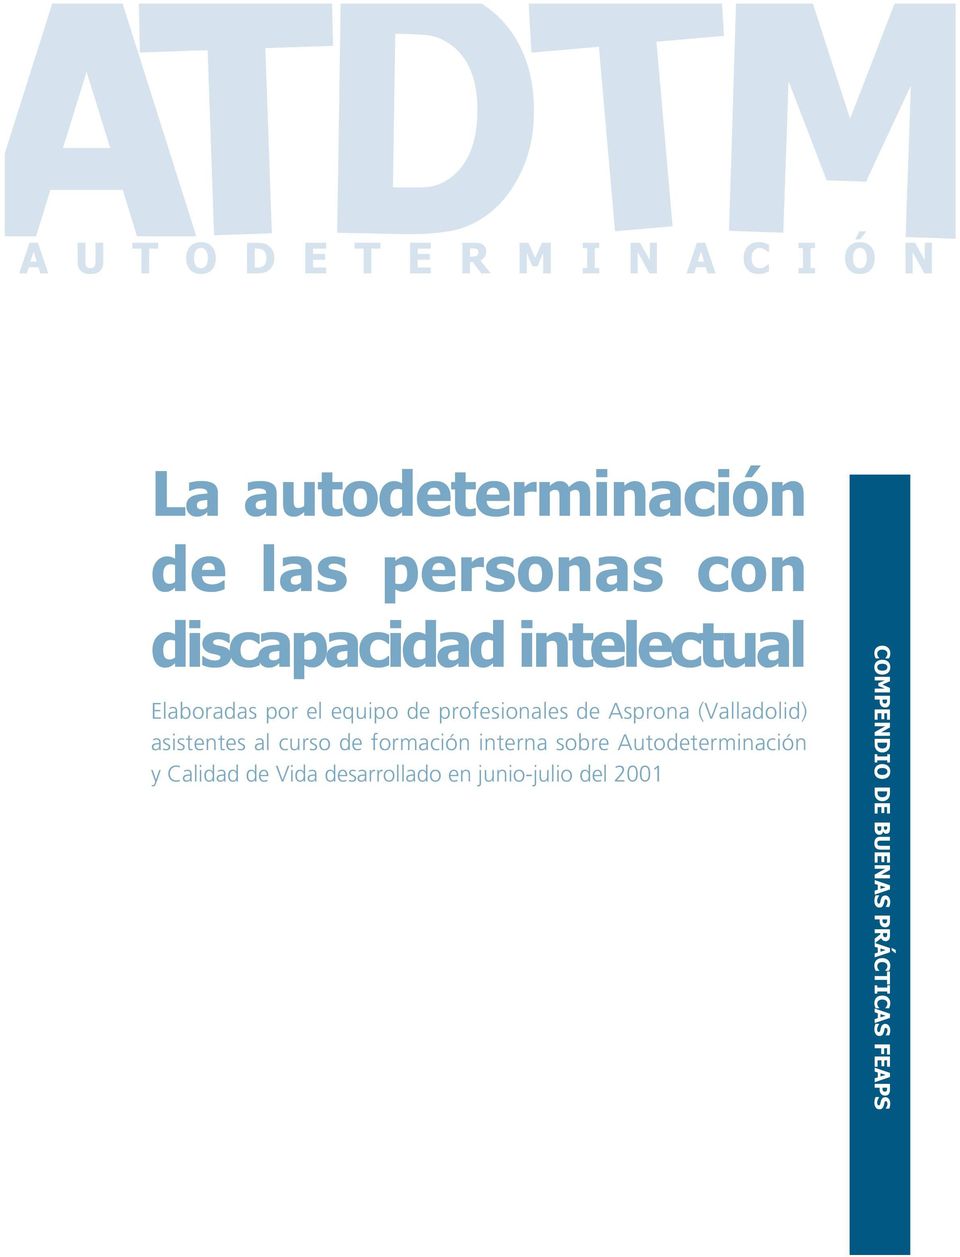 (Valladolid) asistentes al curso de formación interna sobre Autodeterminación y